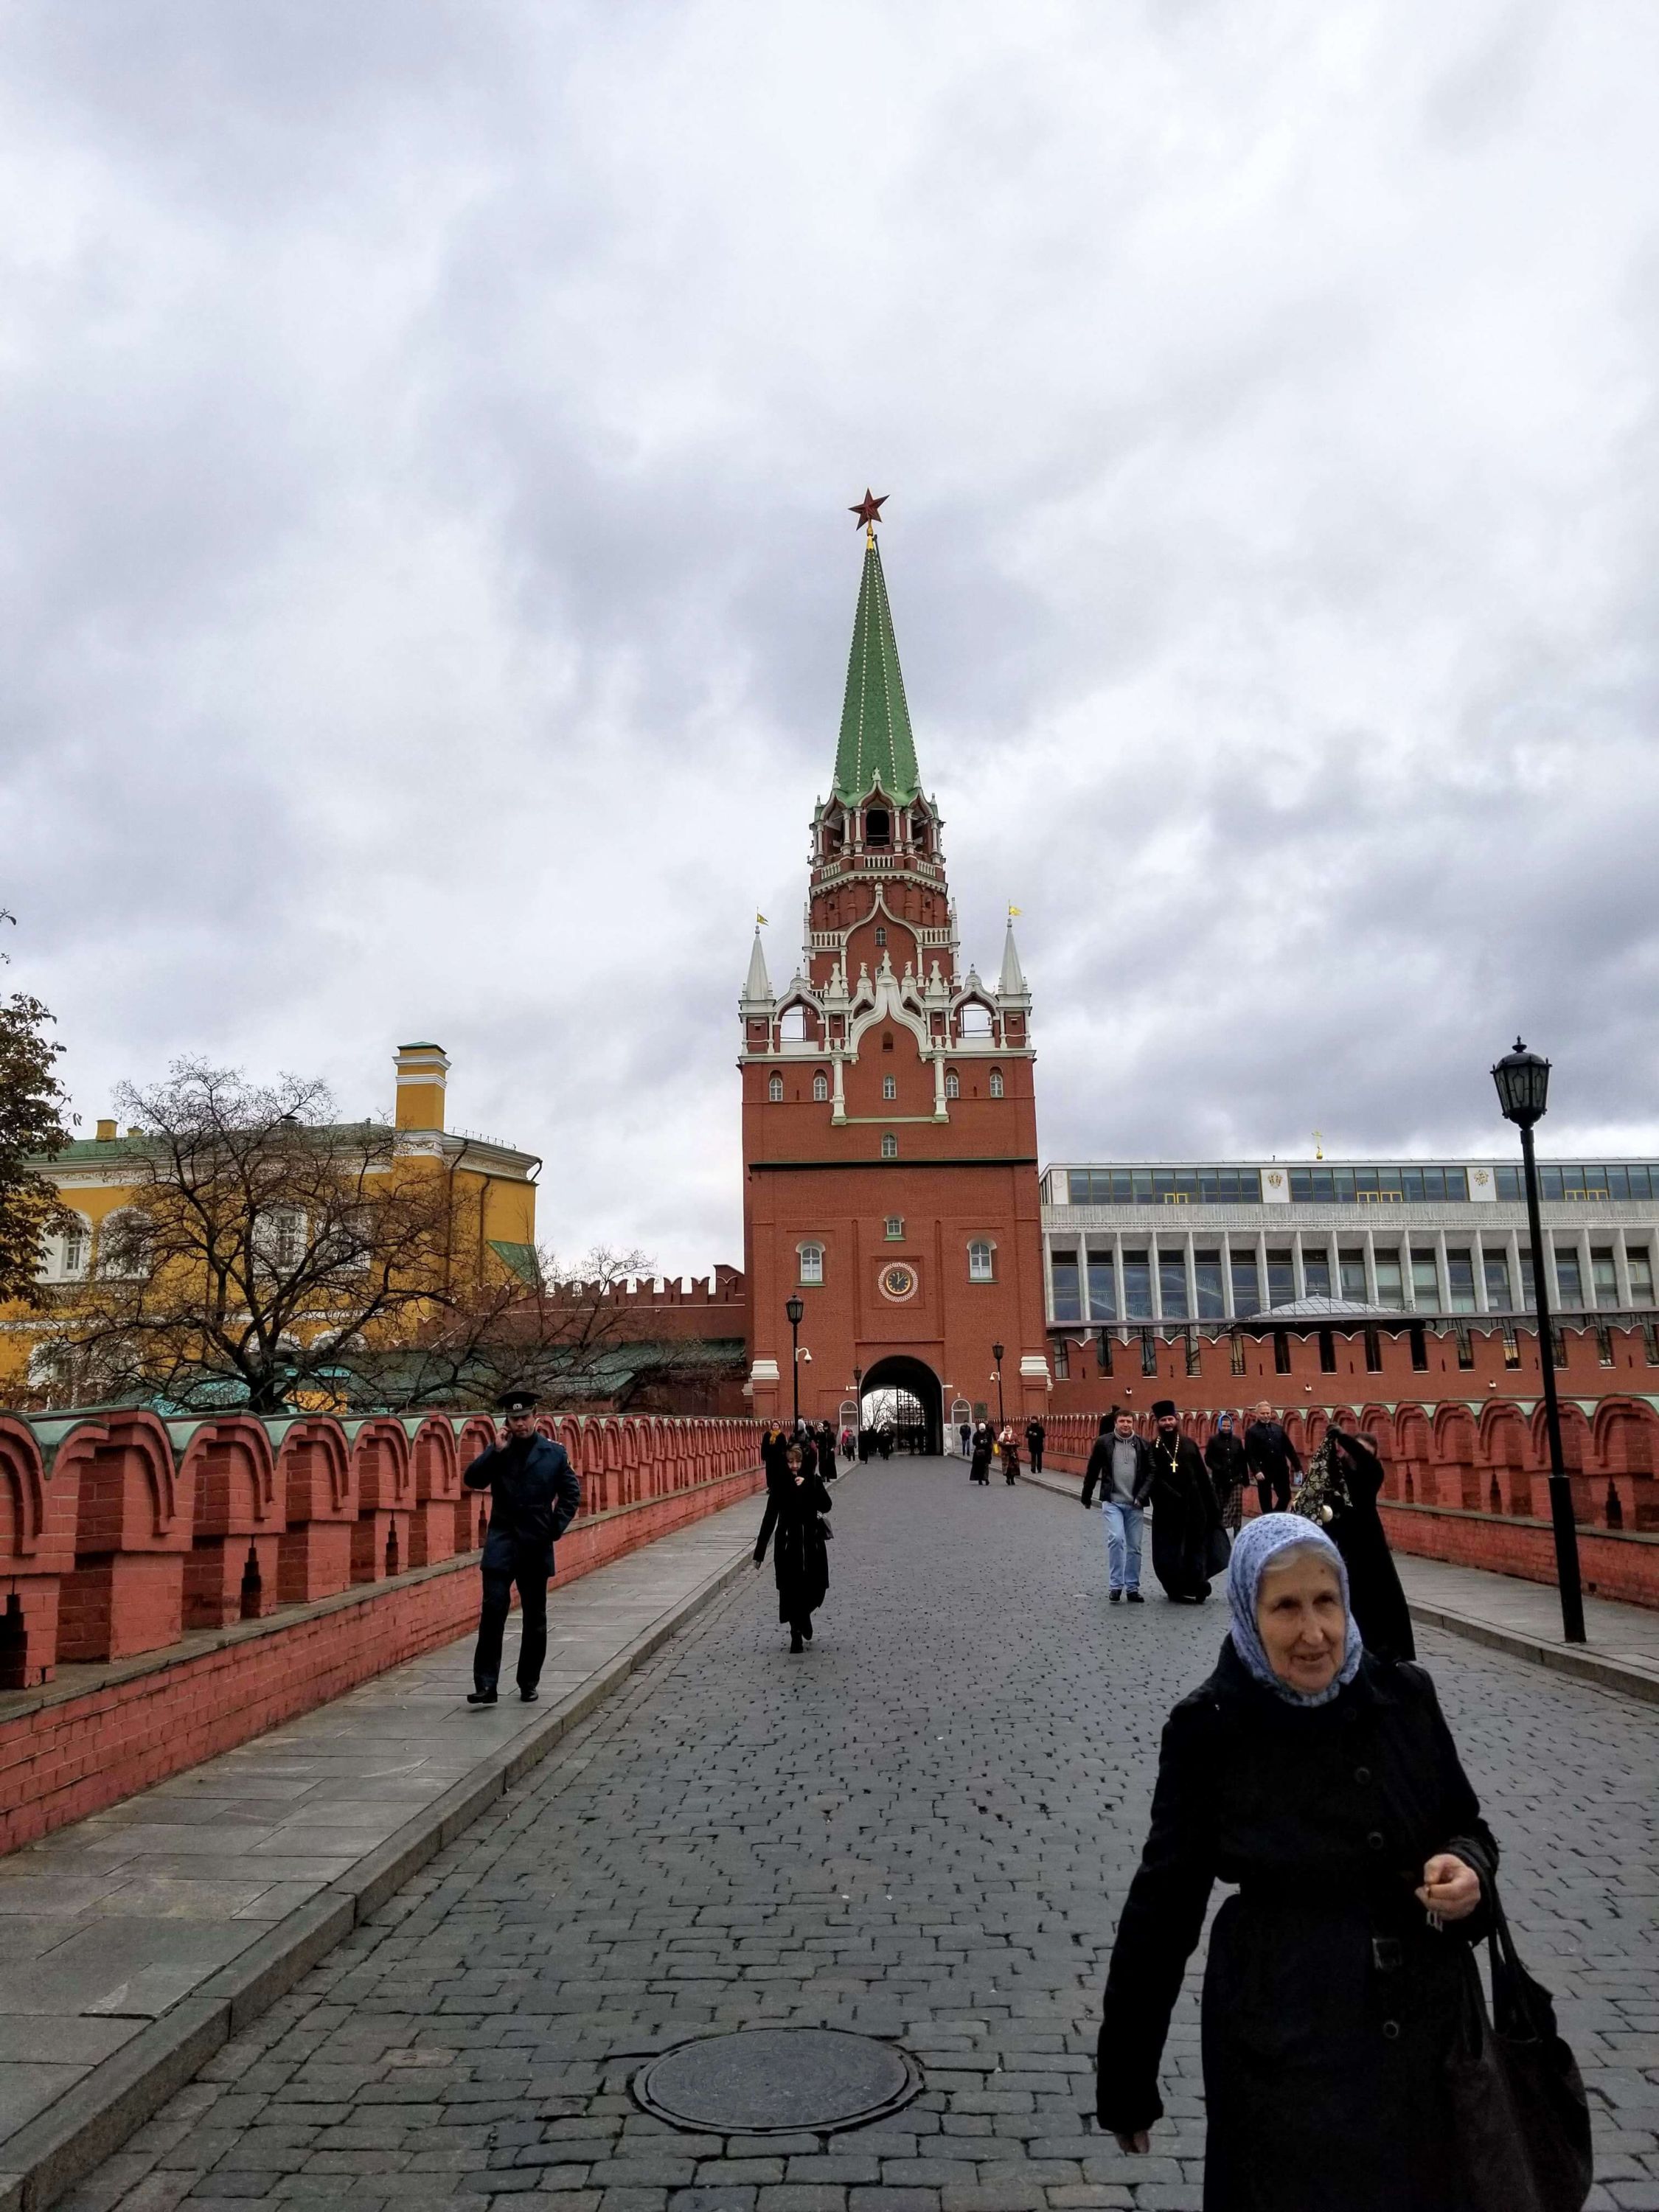 Babushka outside of the Kremlin